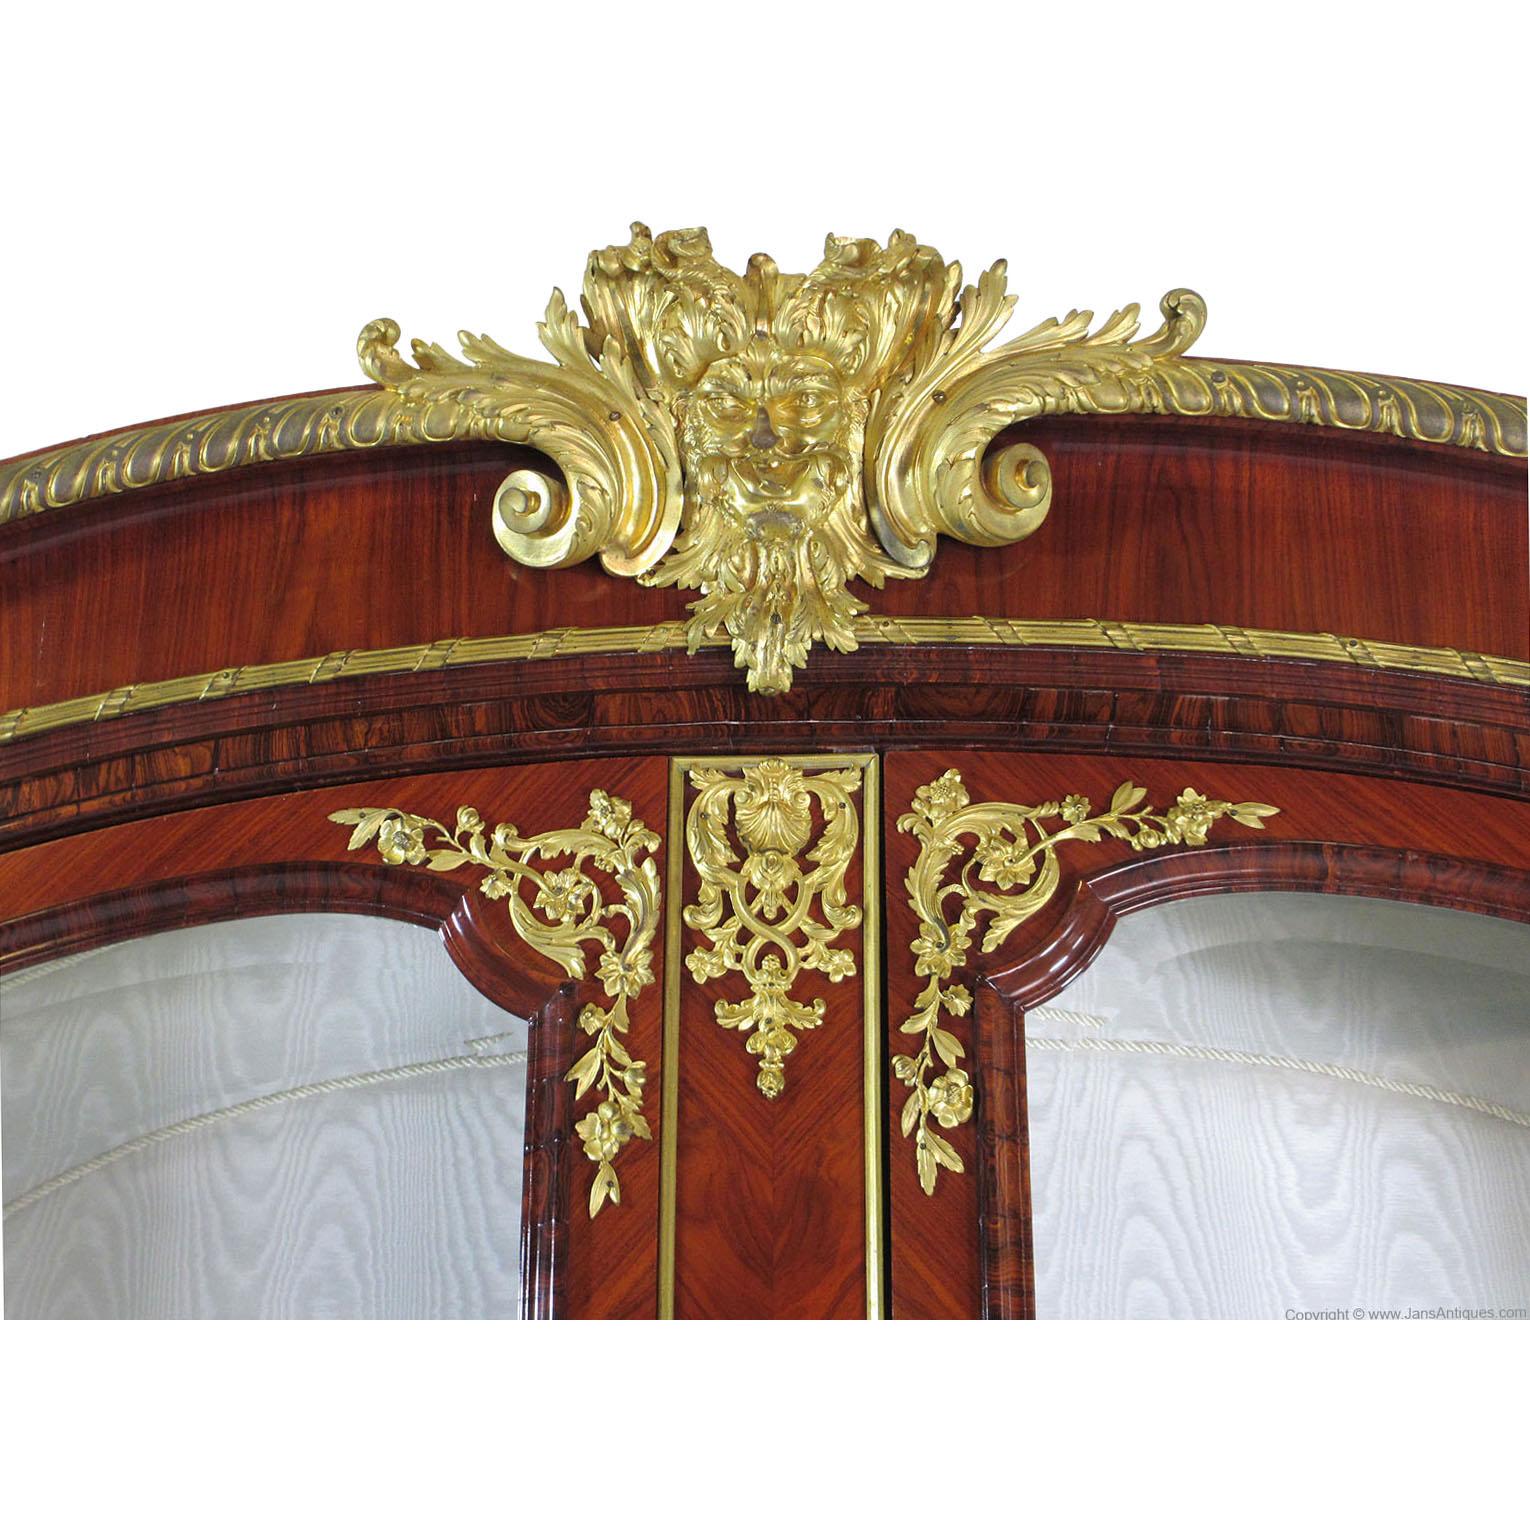 Très belle vitrine à deux portes de style Louis XIV-XV en bois de roi et orfèvrerie, le dessus arqué est surmonté de moulures et de garnitures en bronze doré, L'intérieur est tapissé d'un tissu moiré crème, équipé de trois étagères en verre et d'un